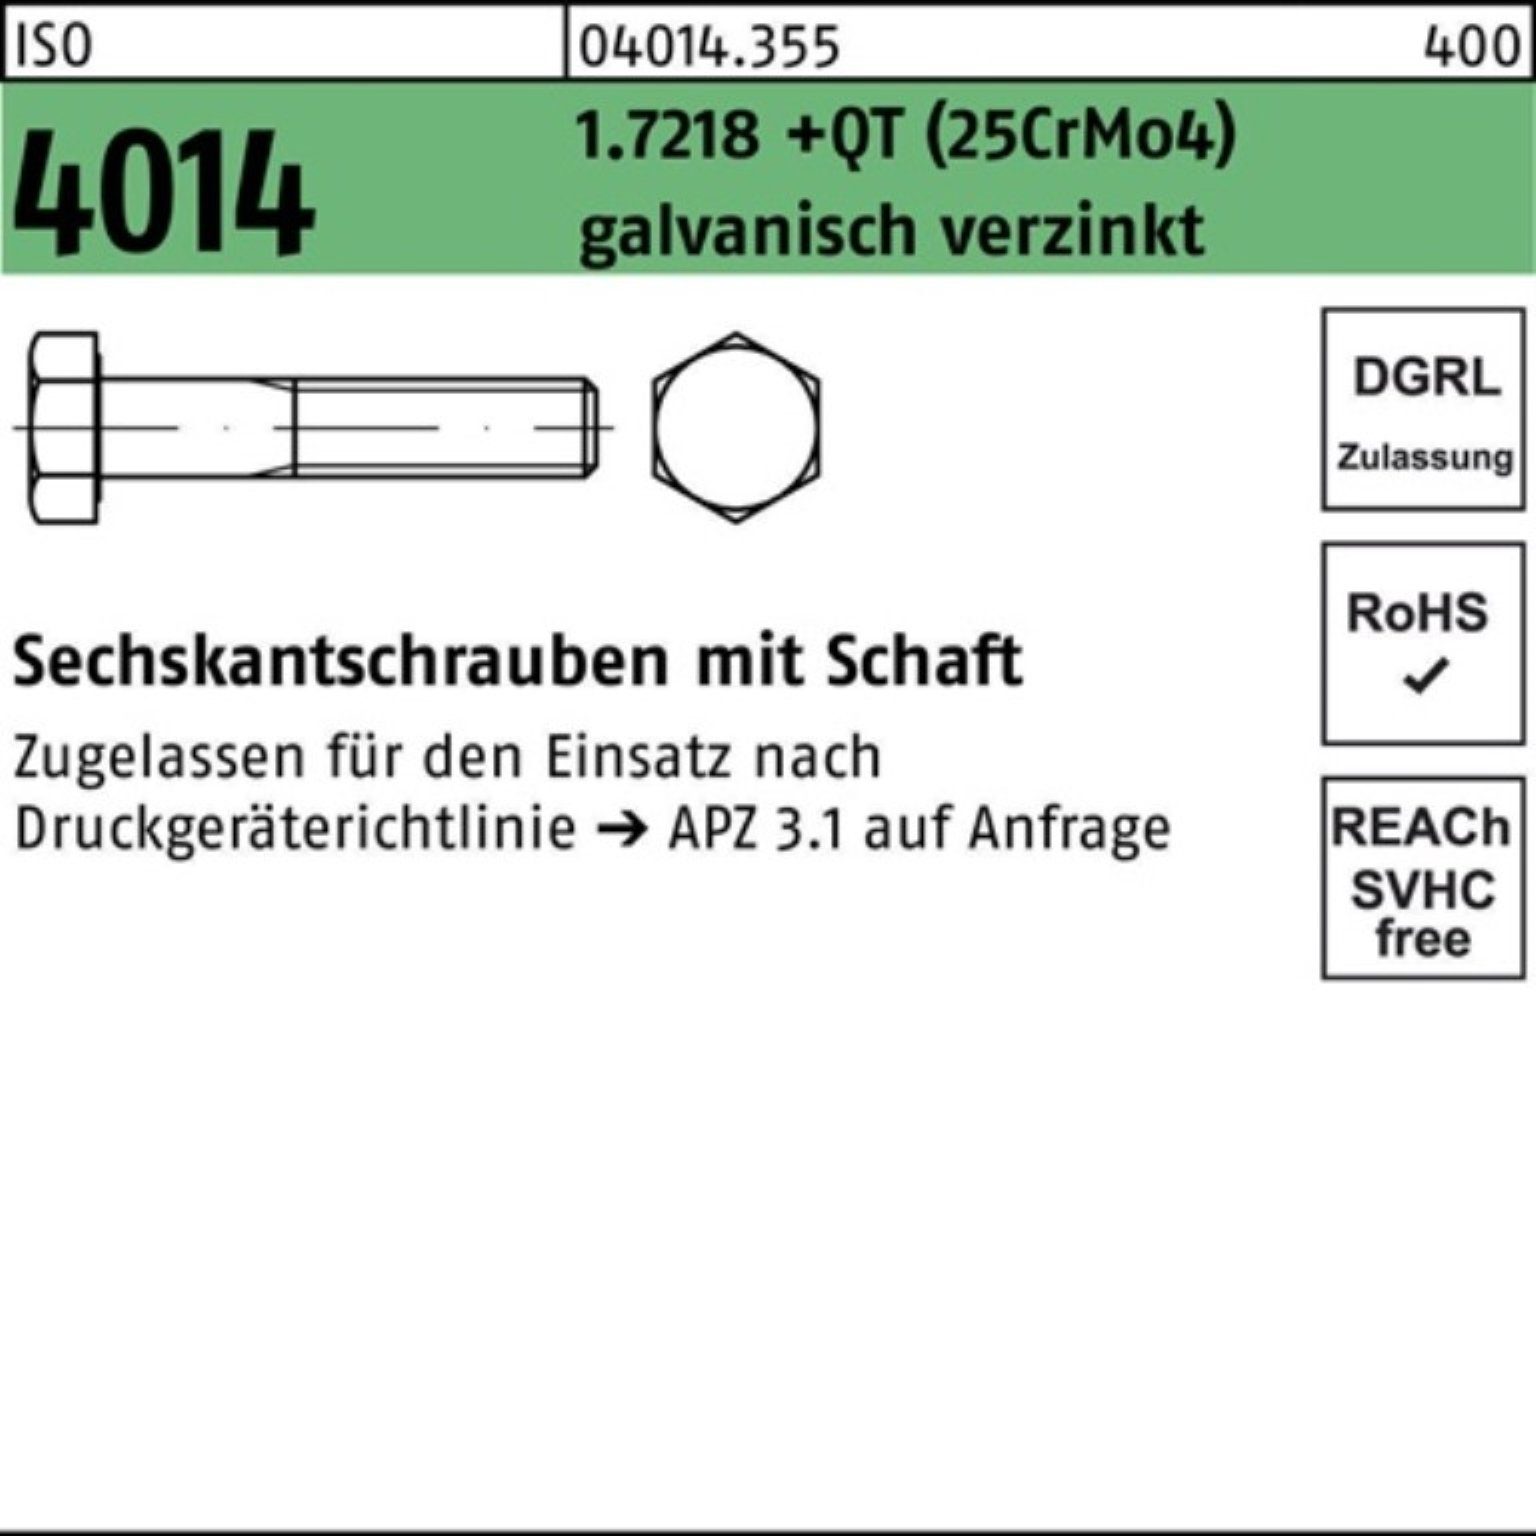 Bufab Sechskantschraube 100er Pack Sechskantschraube 4014 +QT Schaft M12x100 1.7218 ISO (25CrM